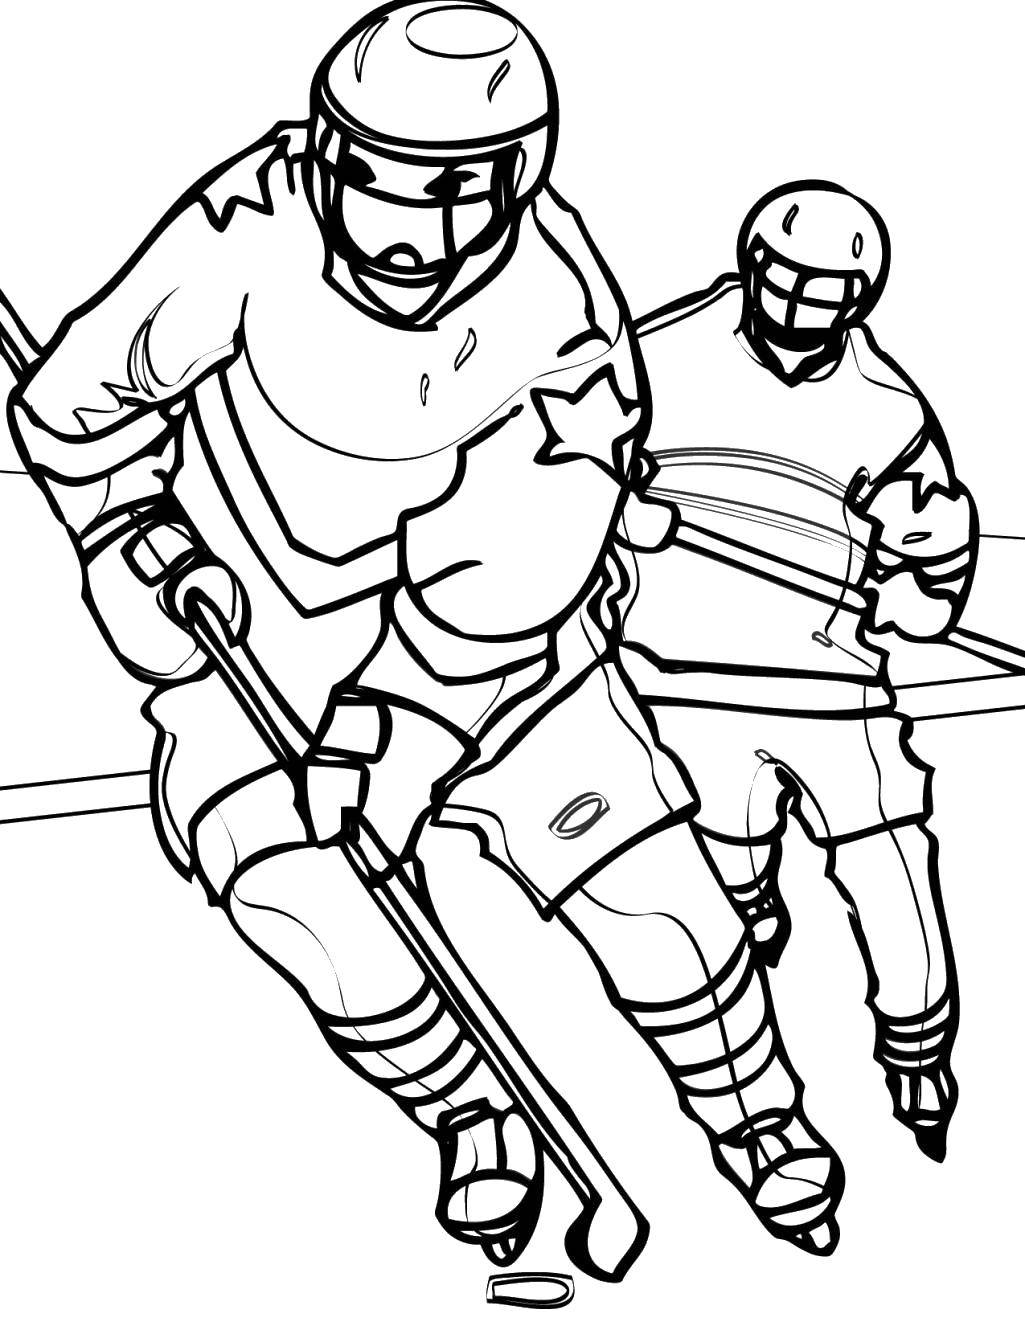 Название: Раскраска Хоккеисты играют на льду. Категория: Спорт. Теги: Спорт, хоккей.